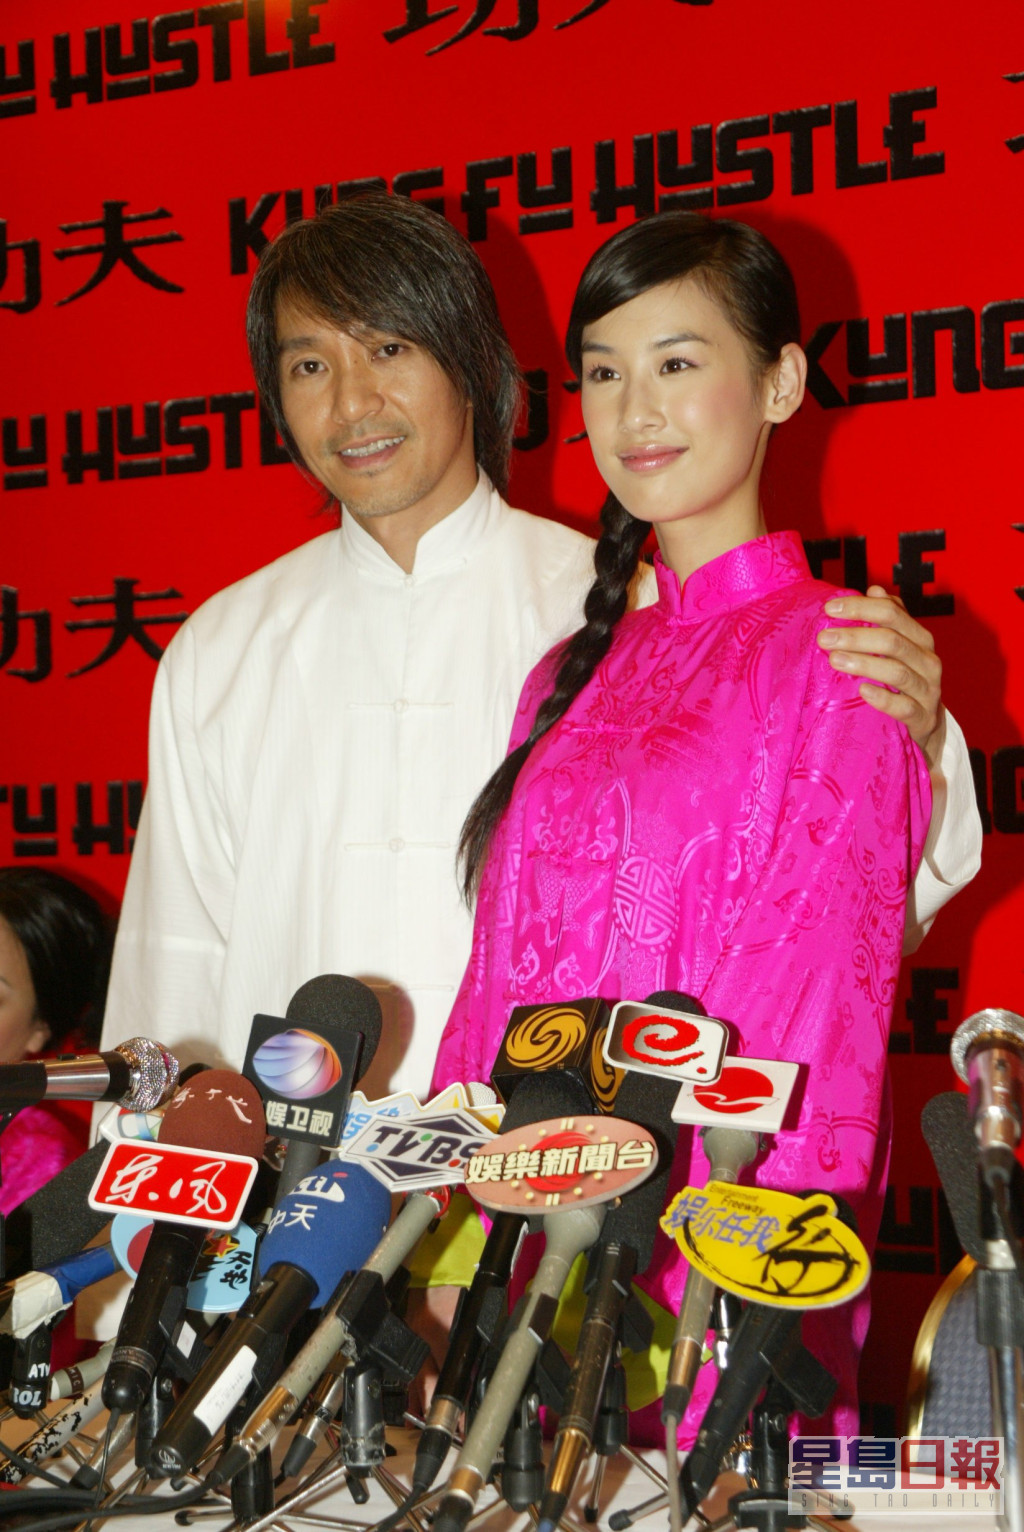 黄圣依2004年于周星驰电影《功夫》中饰演哑女一角成名。